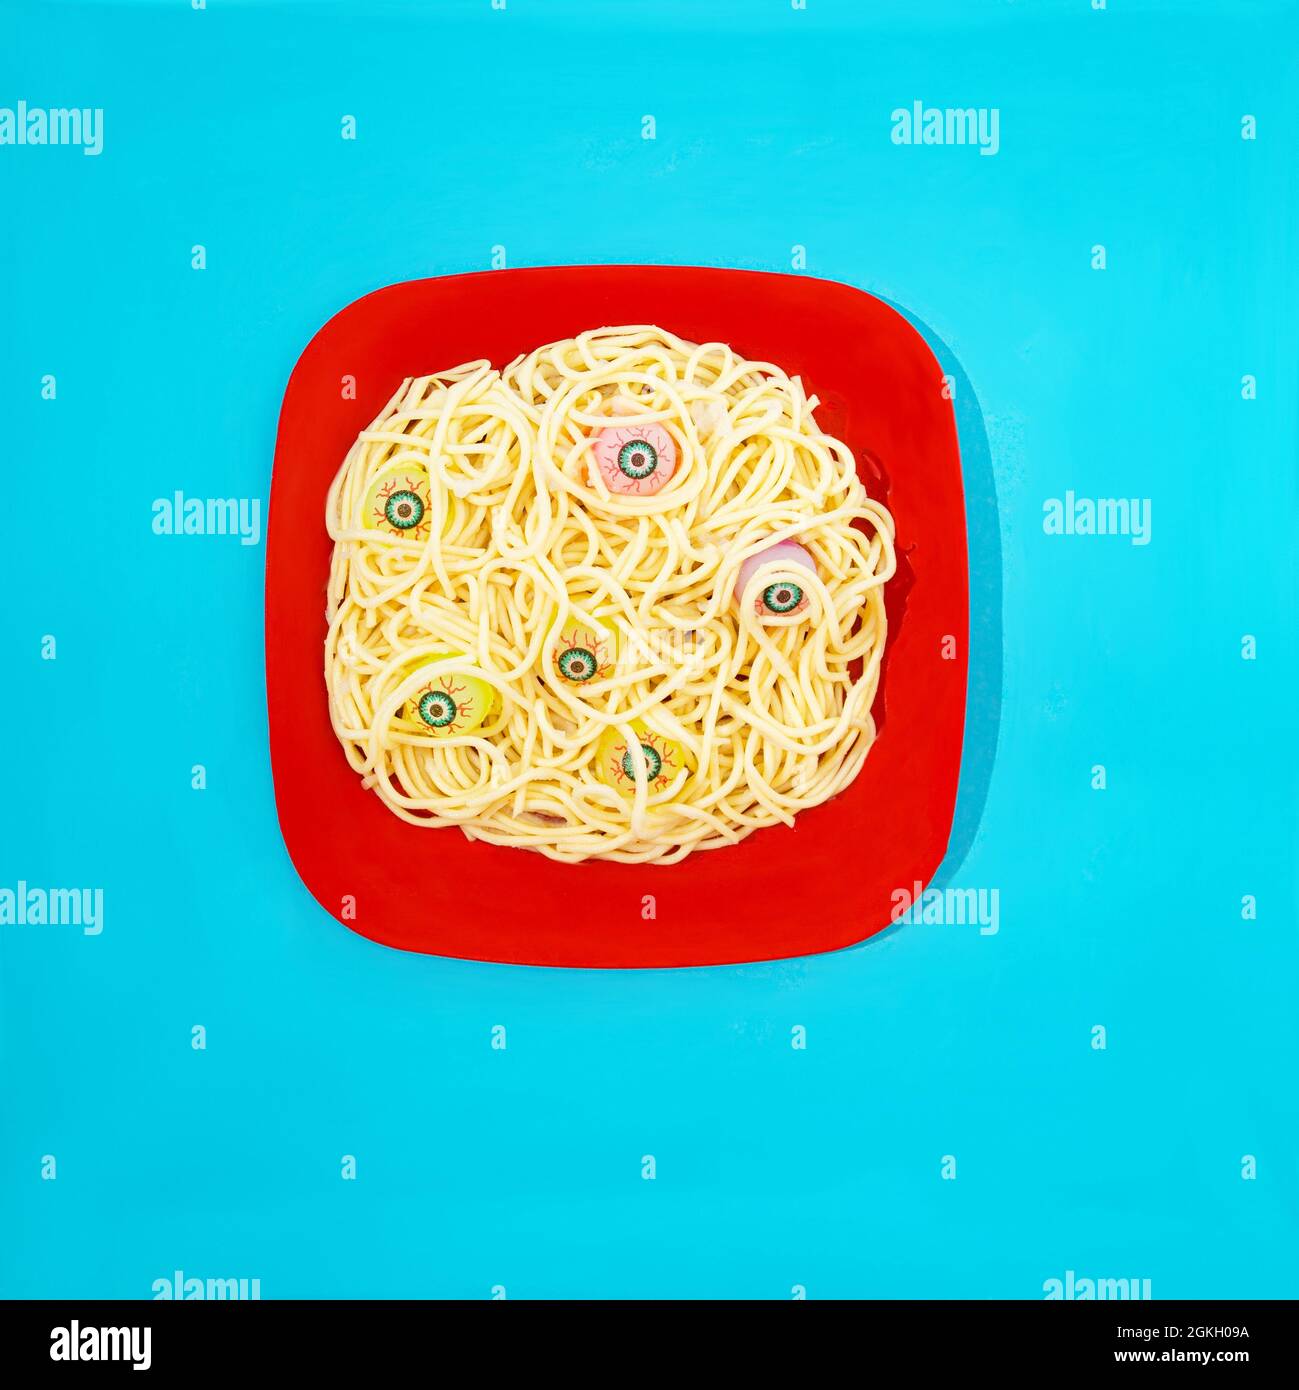 Un piatto rosso con spaghetti e palline oculari spaventose che emergono dal cibo. Sfondo blu pastello. Pranzo di Halloween o invito di festa concetto creativo. Foto Stock